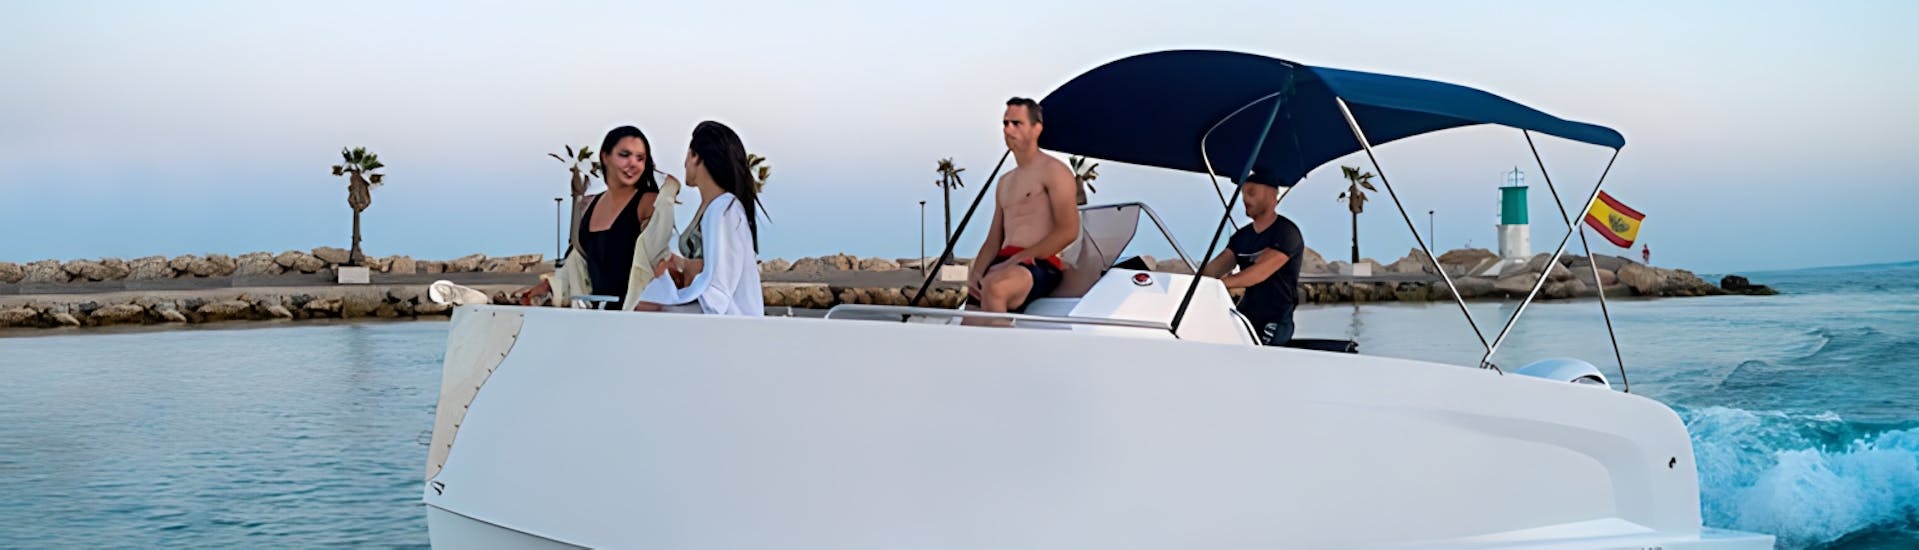 Passeggeri ammirano il paesaggio durtante il Noleggio barca a Marbella con patente nautica (fino a 8 persone).